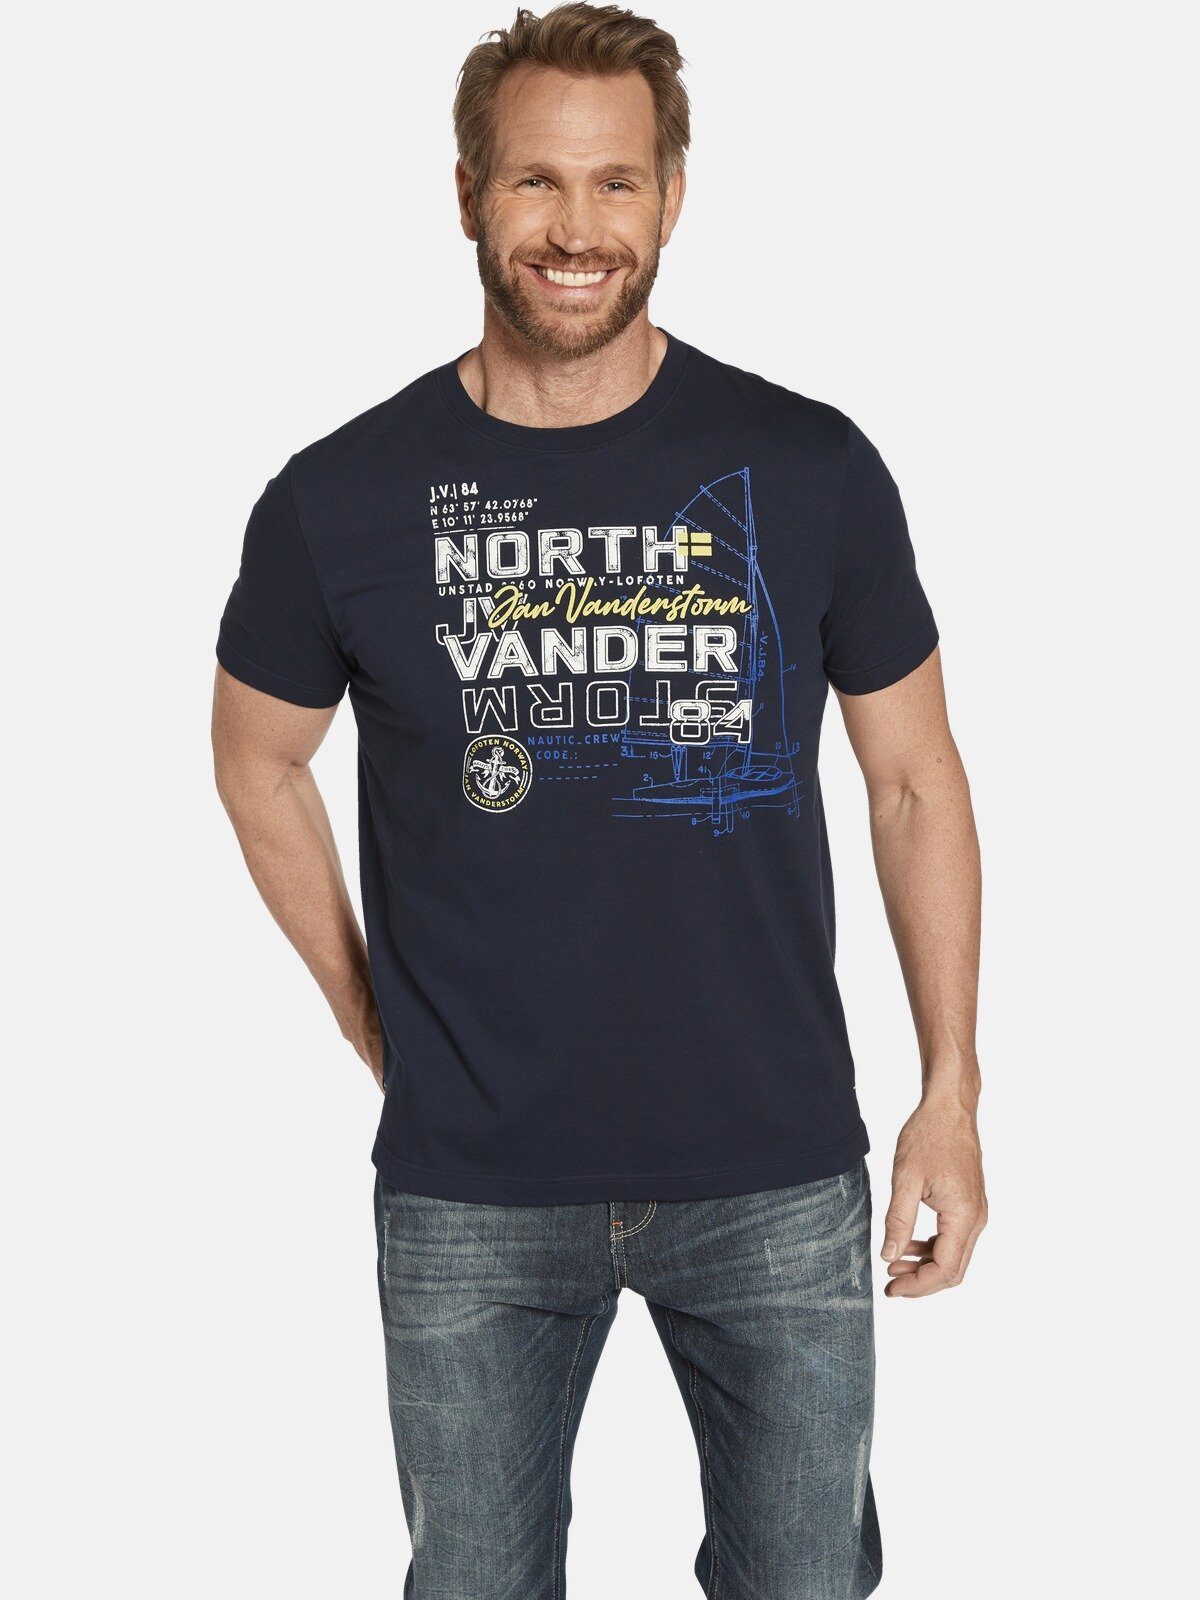 Jan Vanderstorm T-Shirt FRIMANN Druck mit maritimen